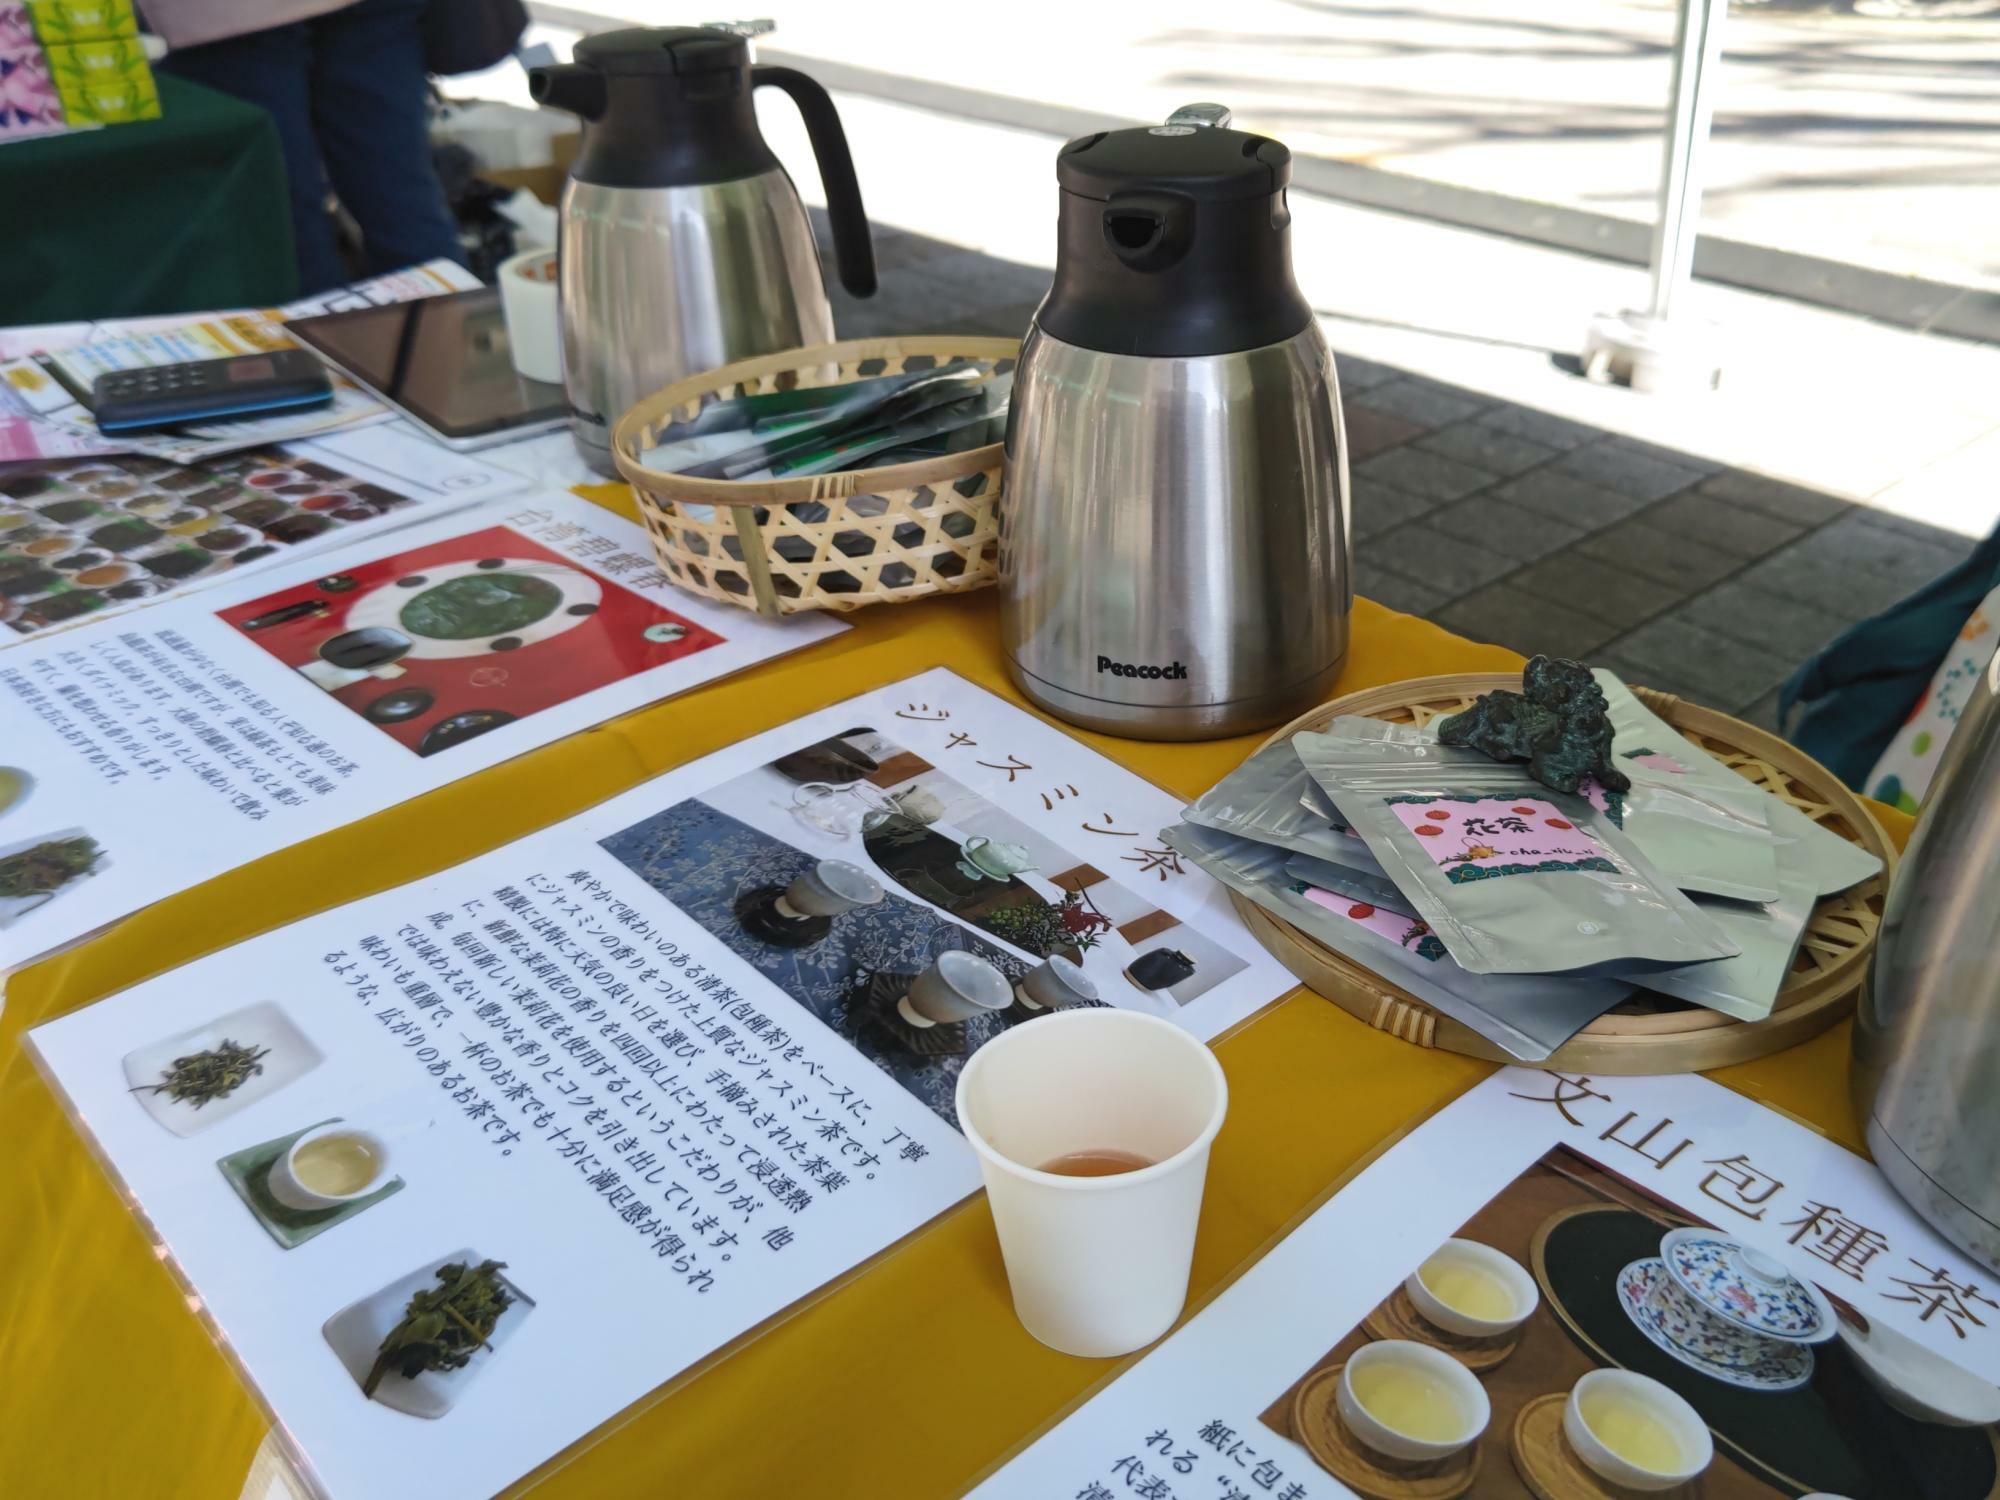 「シェアキッチンChaTora」にて毎週水曜日に営業中の中国茶カフェ「茶休息」さんのブースにて撮影。